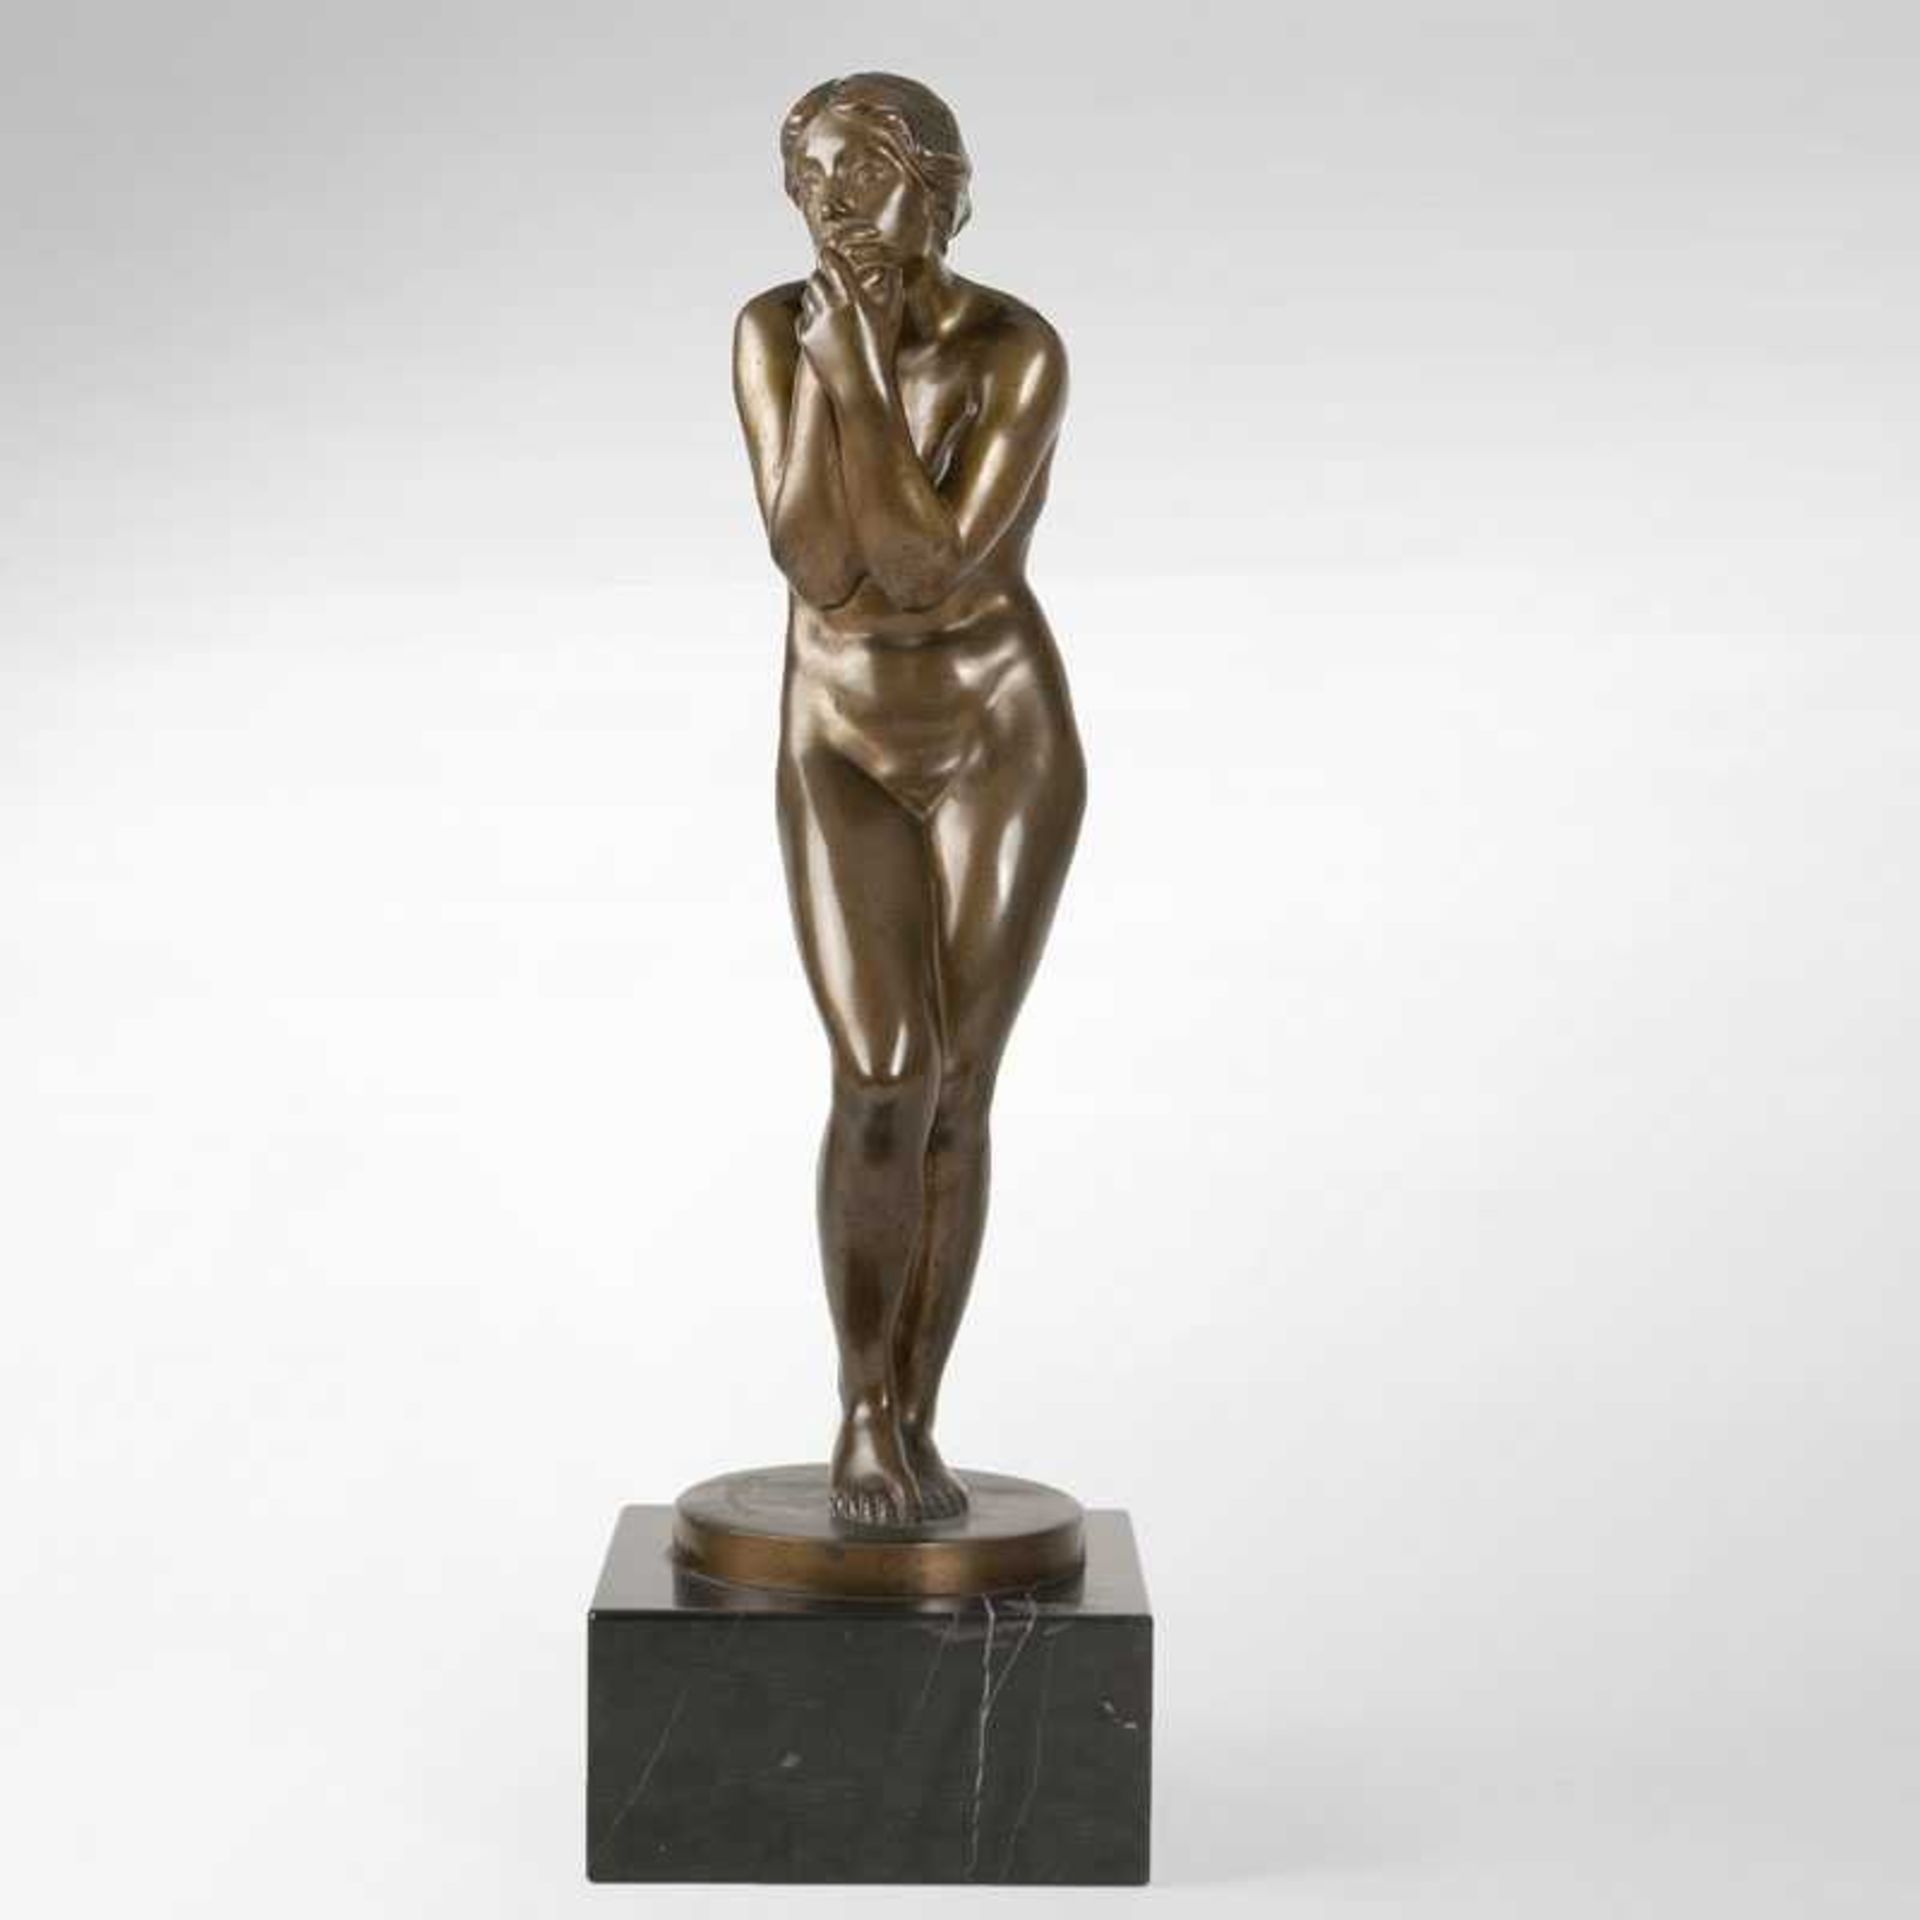 Gerhard Adolf Janensch (1860 - 1933) Bronzeskulptur 'Mädchen-Akt' Um 1910/20. Patinierte Bronze